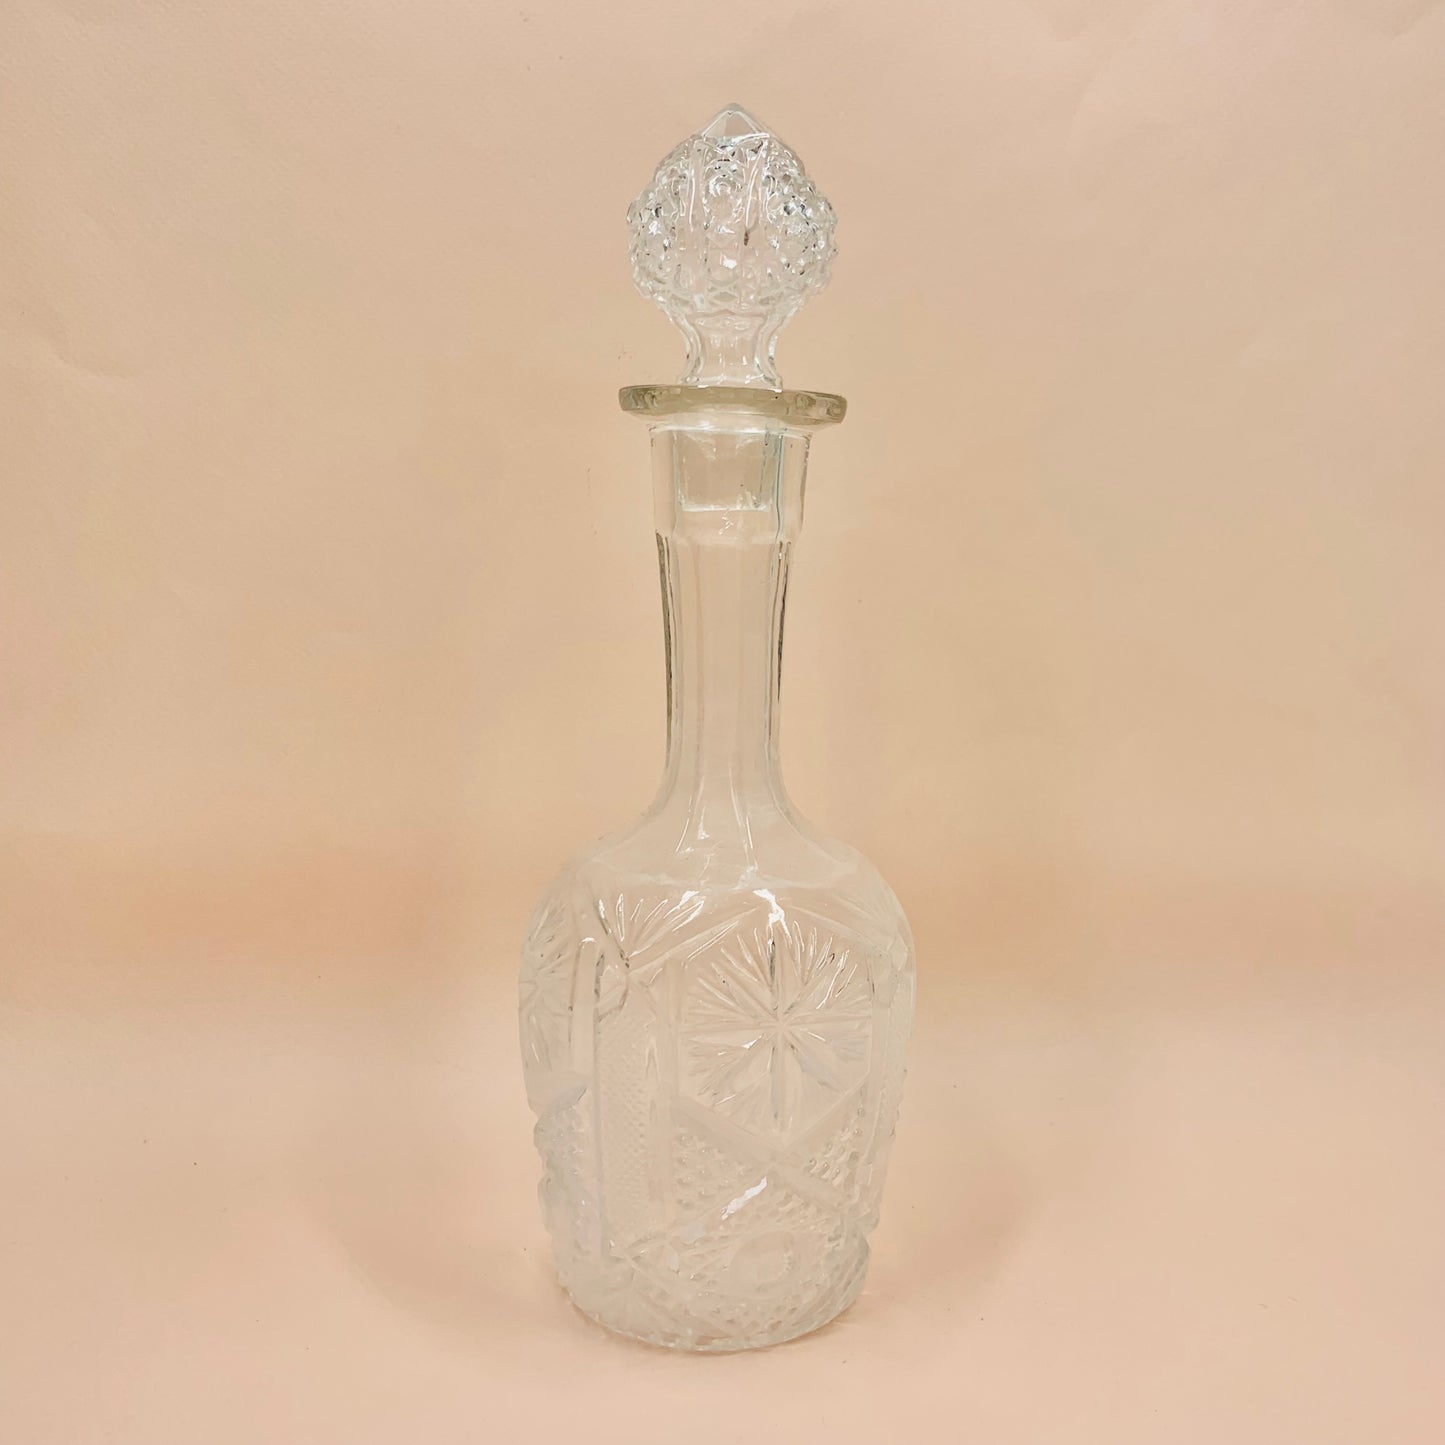 Antique pressed glass decanter